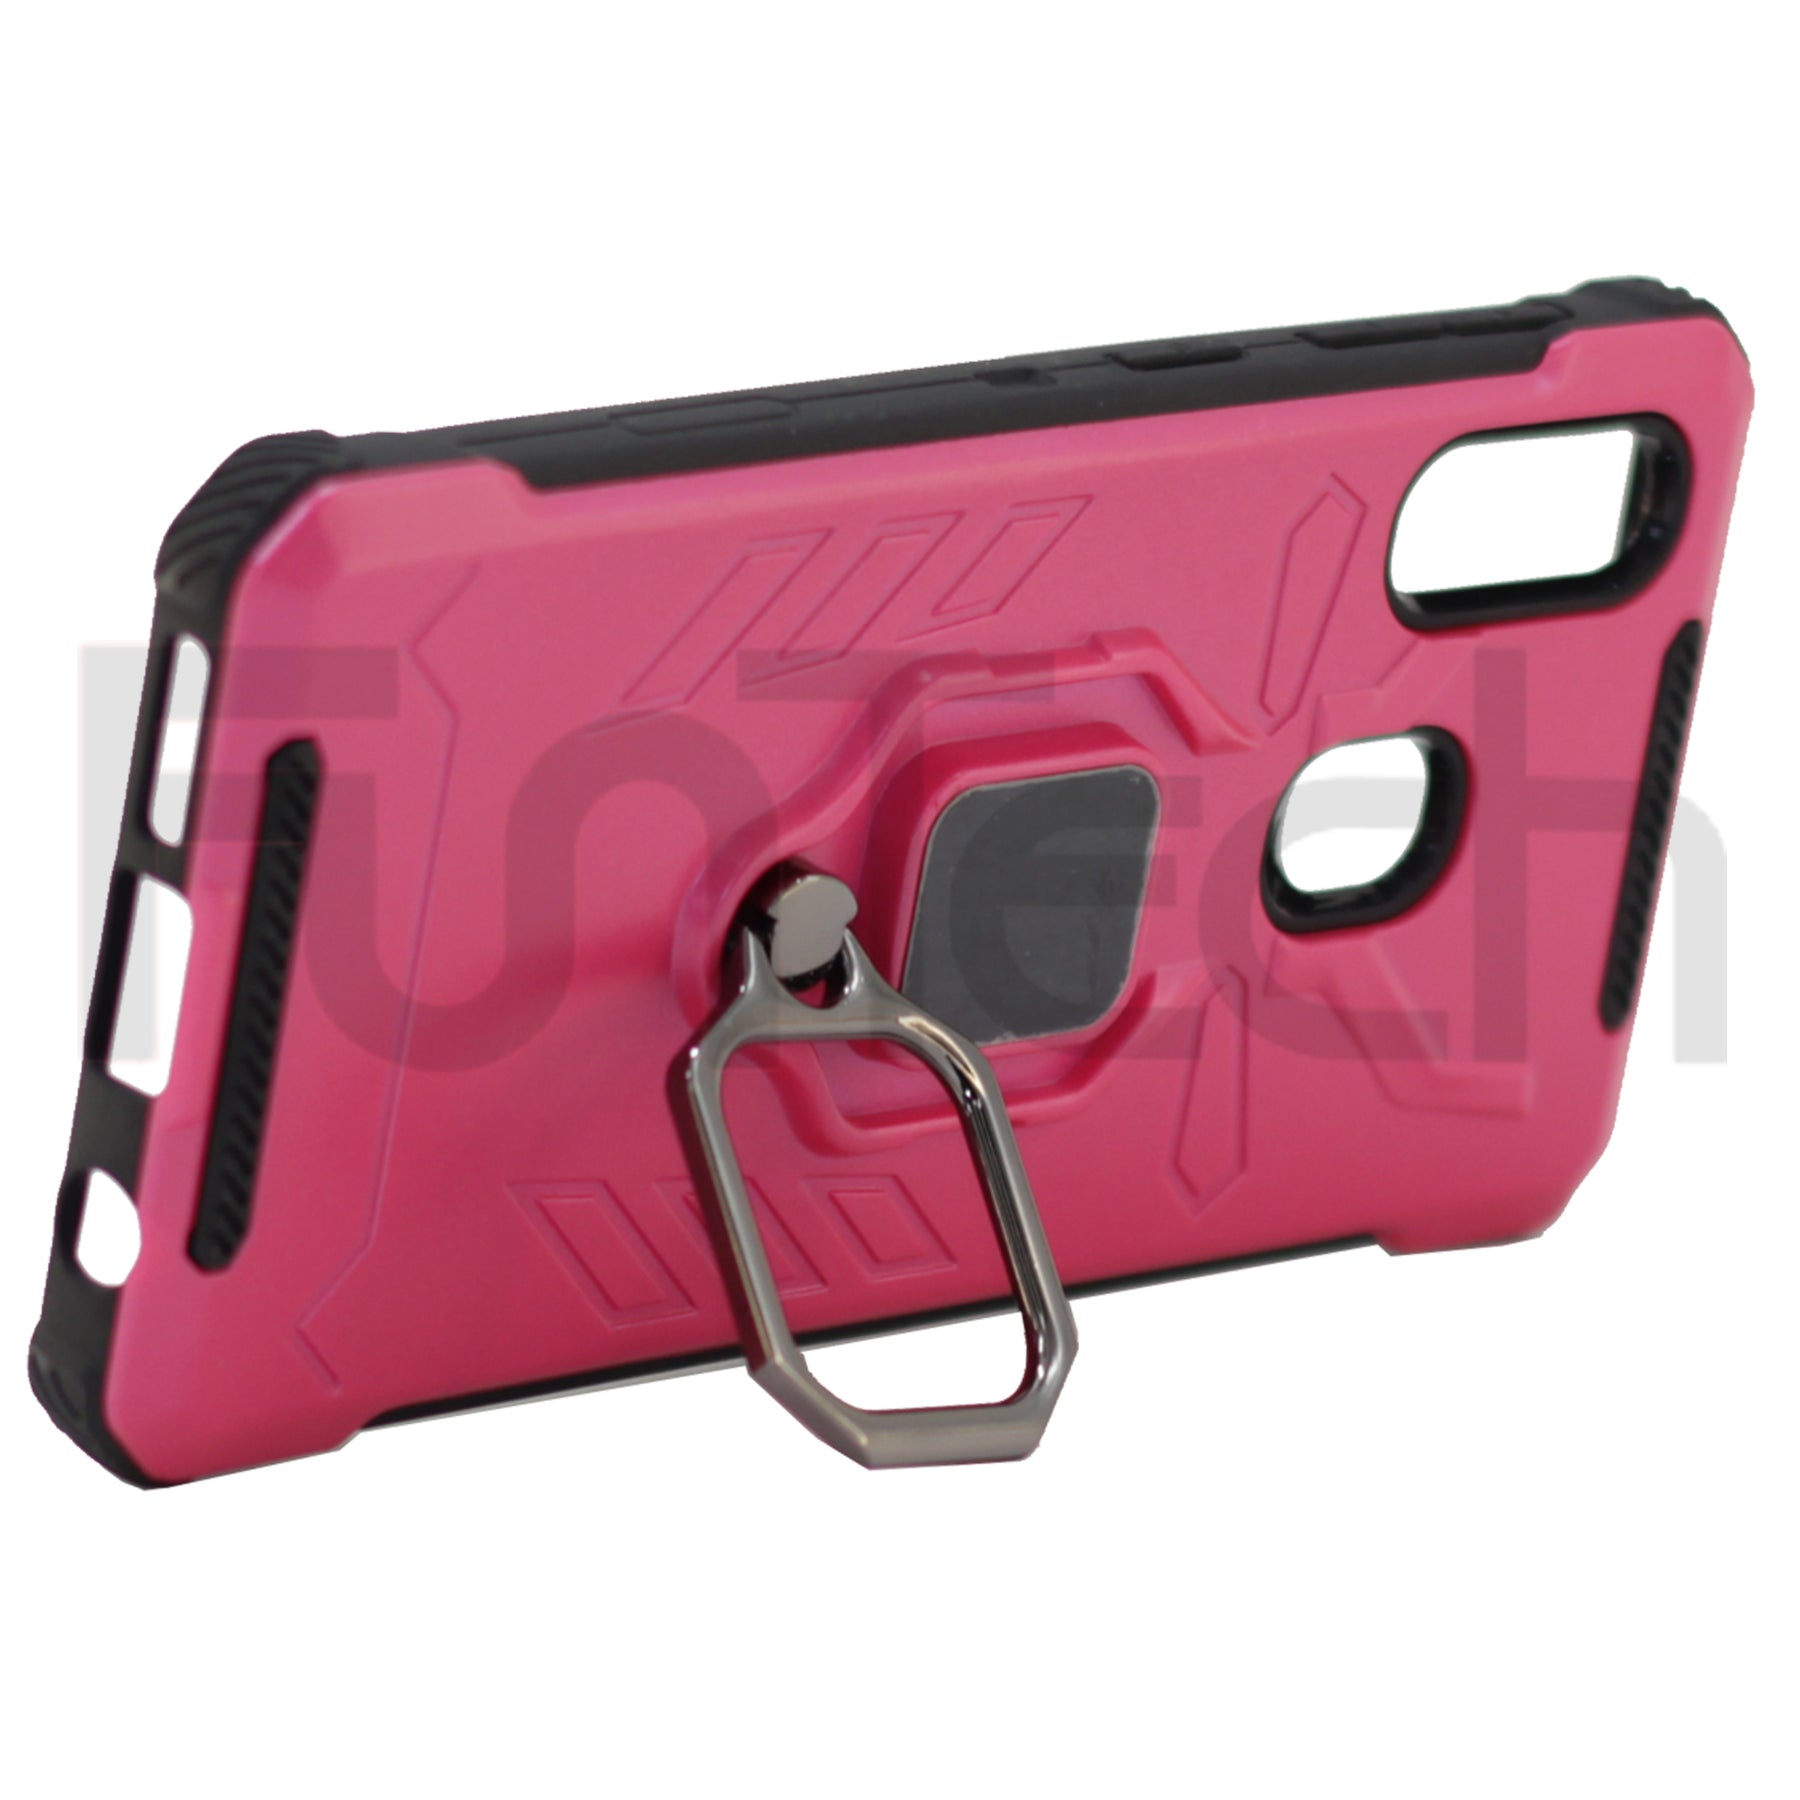 Samsung A20e, Ring Armor Case, Color Pink.